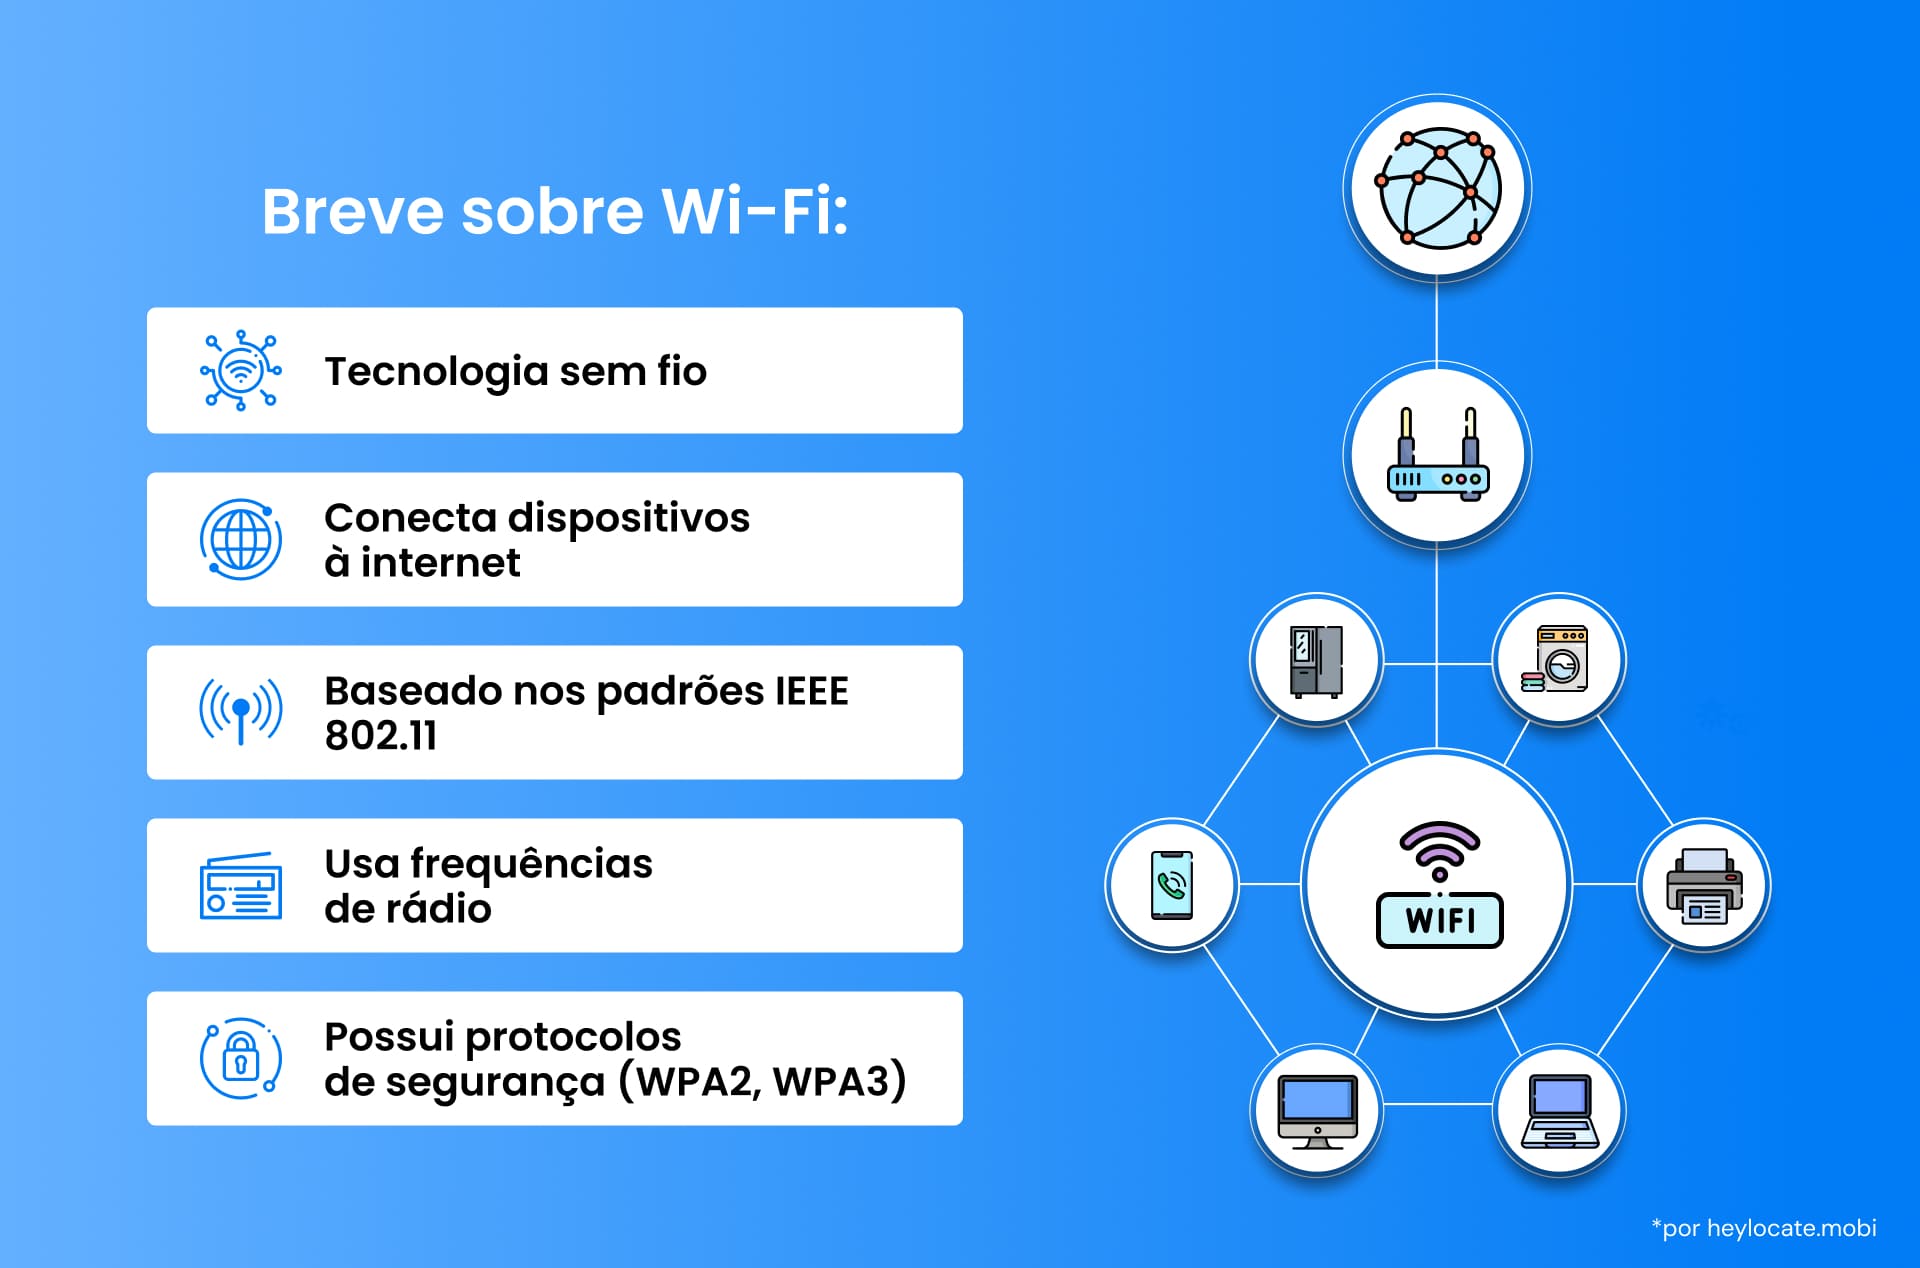 Um infográfico que explica a tecnologia Wi-Fi, incluindo sua conexão com dispositivos, padrões, uso de frequência e protocolos de segurança